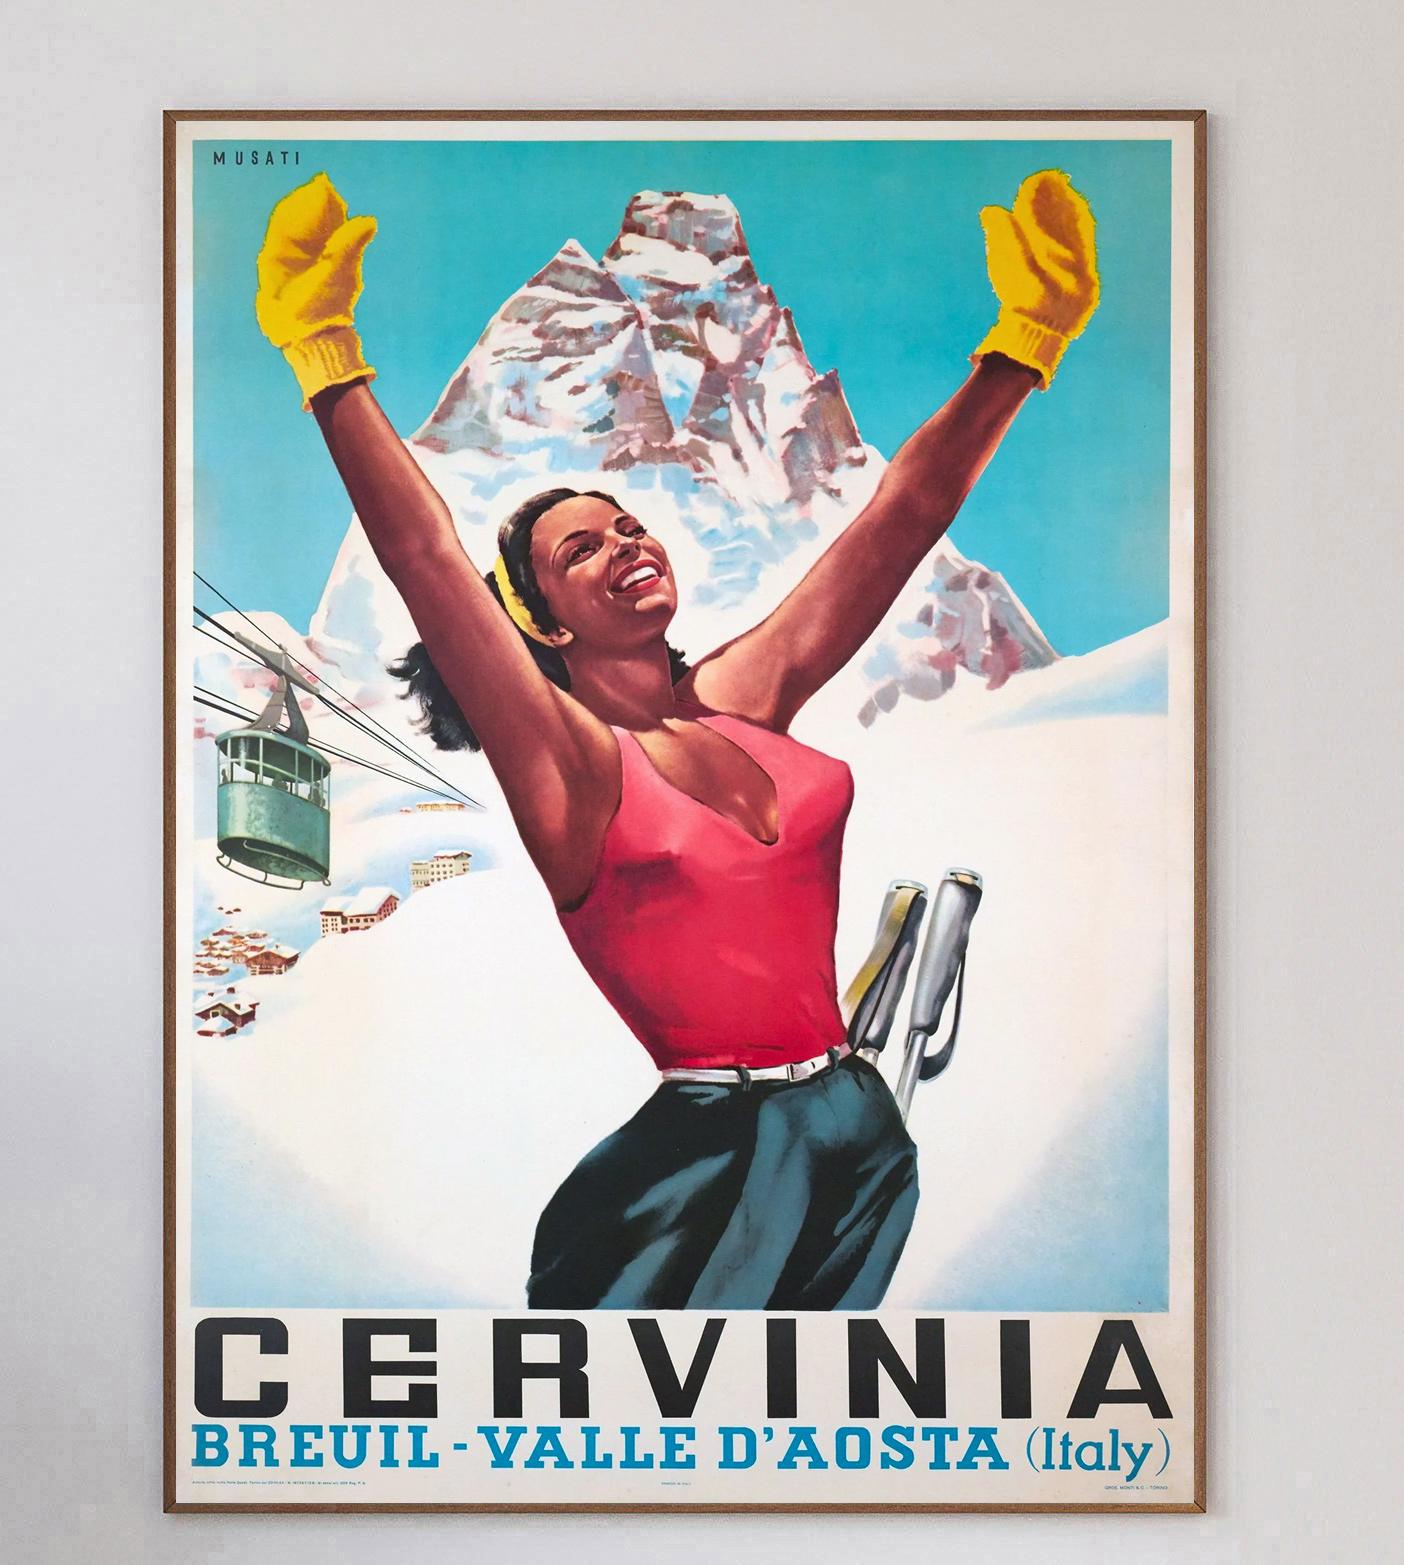 Schönes lebendiges Plakat aus dem Jahr 1953, das für den Skiort Cervinia in der Region Aosta im Nordwesten Italiens wirbt. Dieses Plakat wurde erstellt, um die Region bei Touristen in ganz Europa bekannt zu machen.

Das wunderbare Kunstwerk des